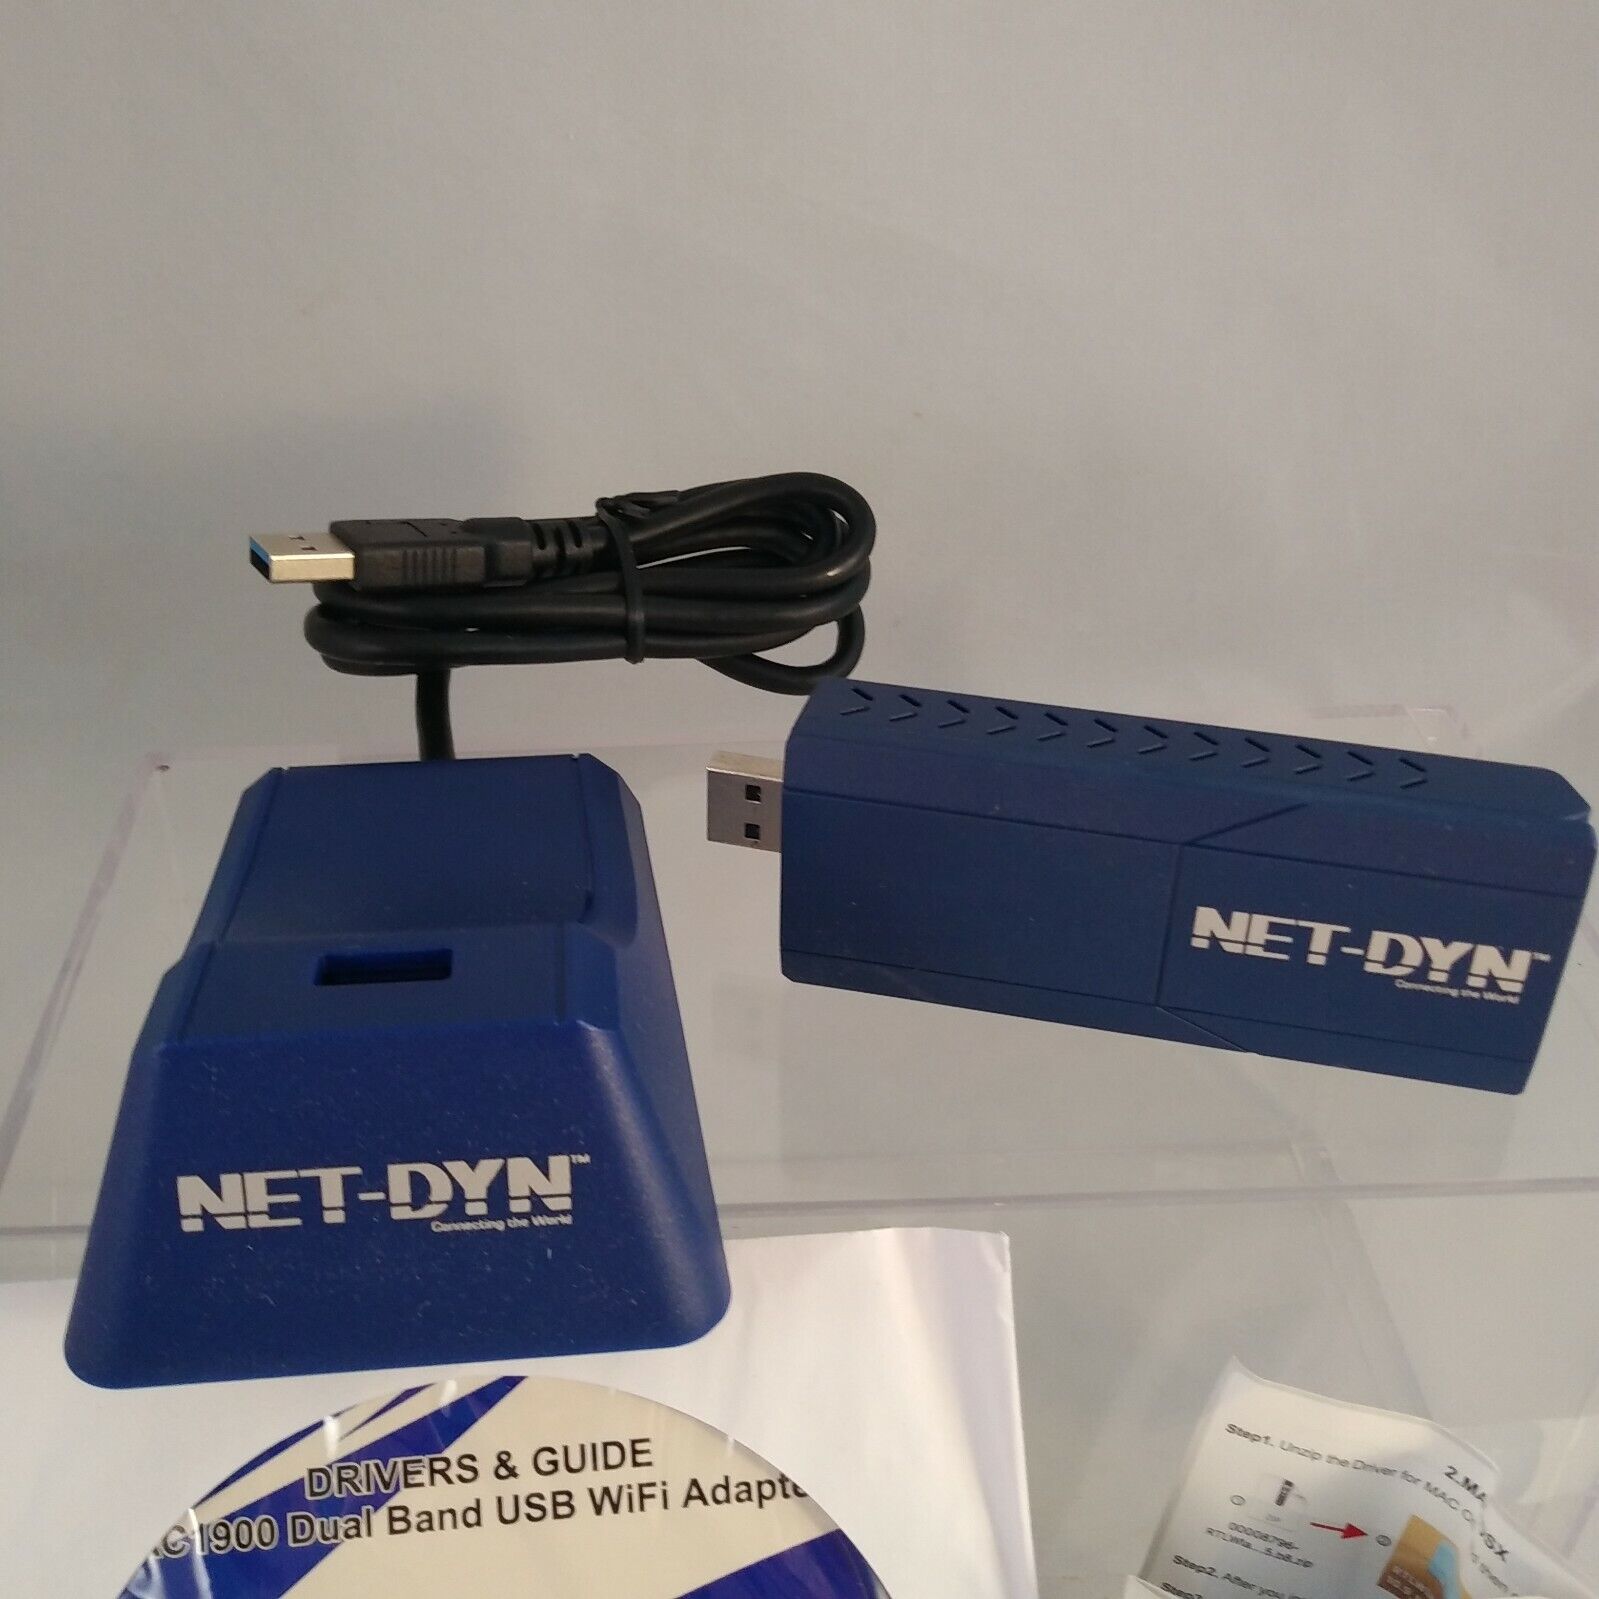 net-dyn-usb-wireless-wi-fi-adapter-review